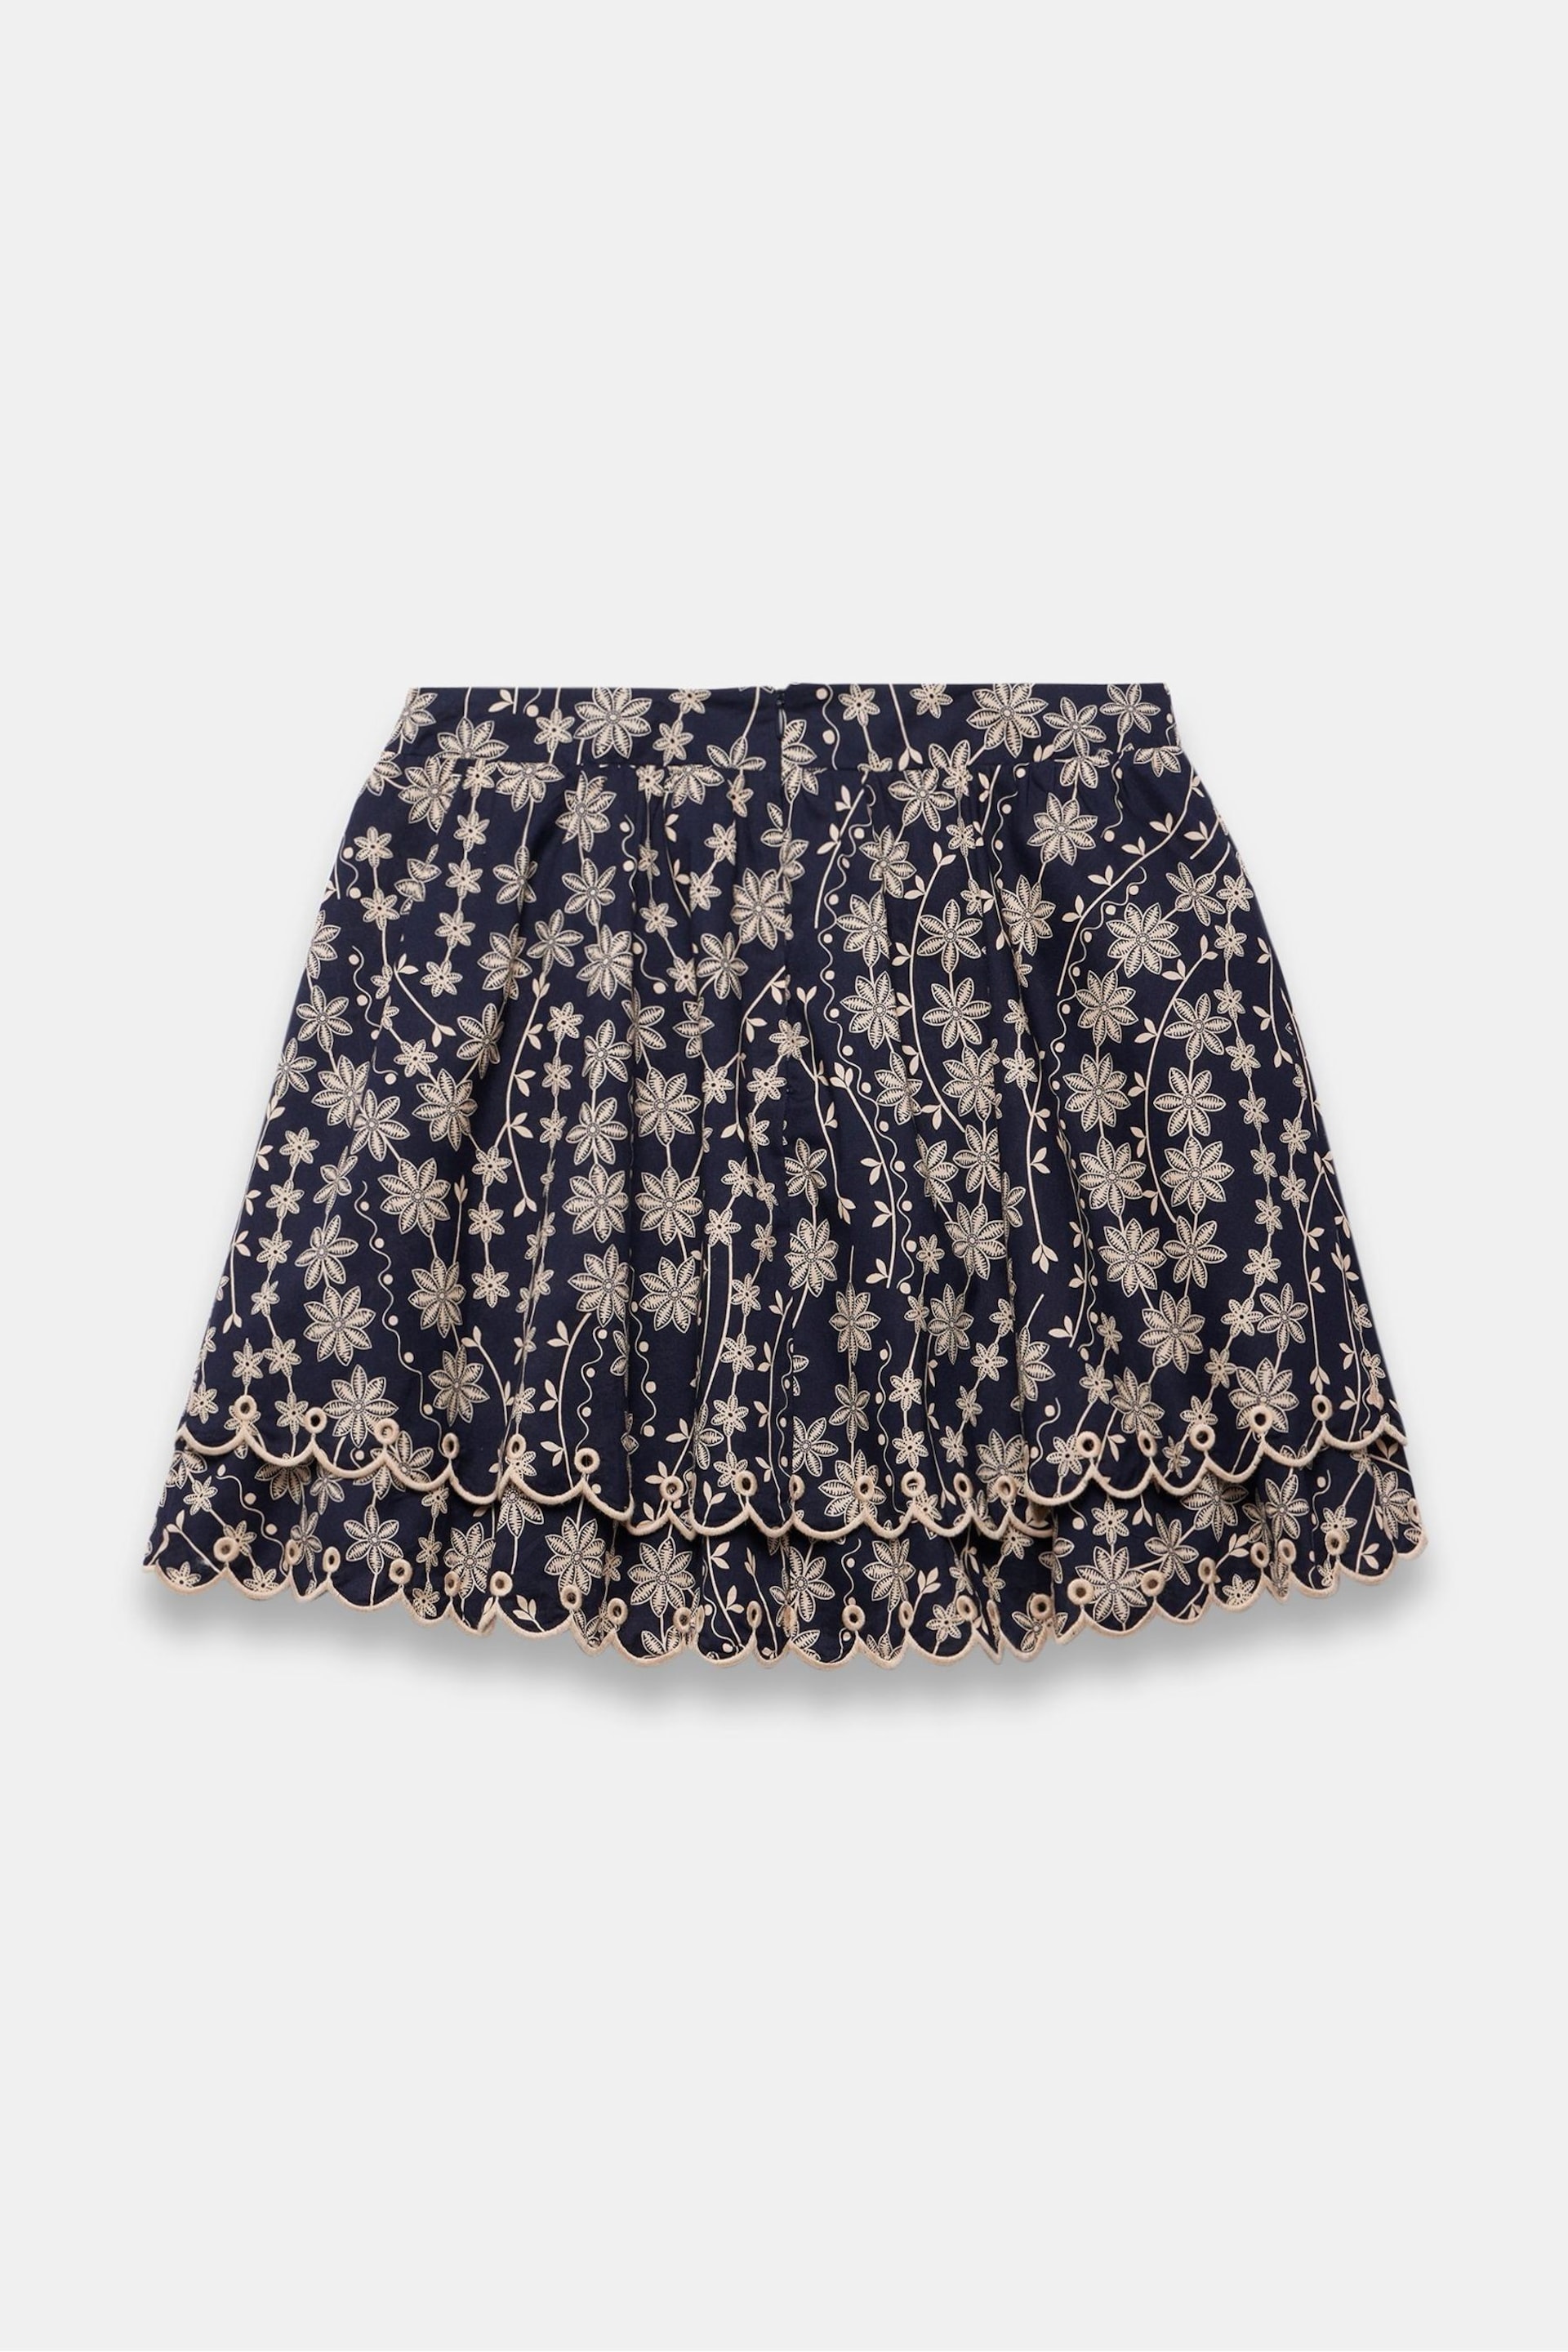 Mint Velvet Blue Cotton Mini Skirt - Image 4 of 4